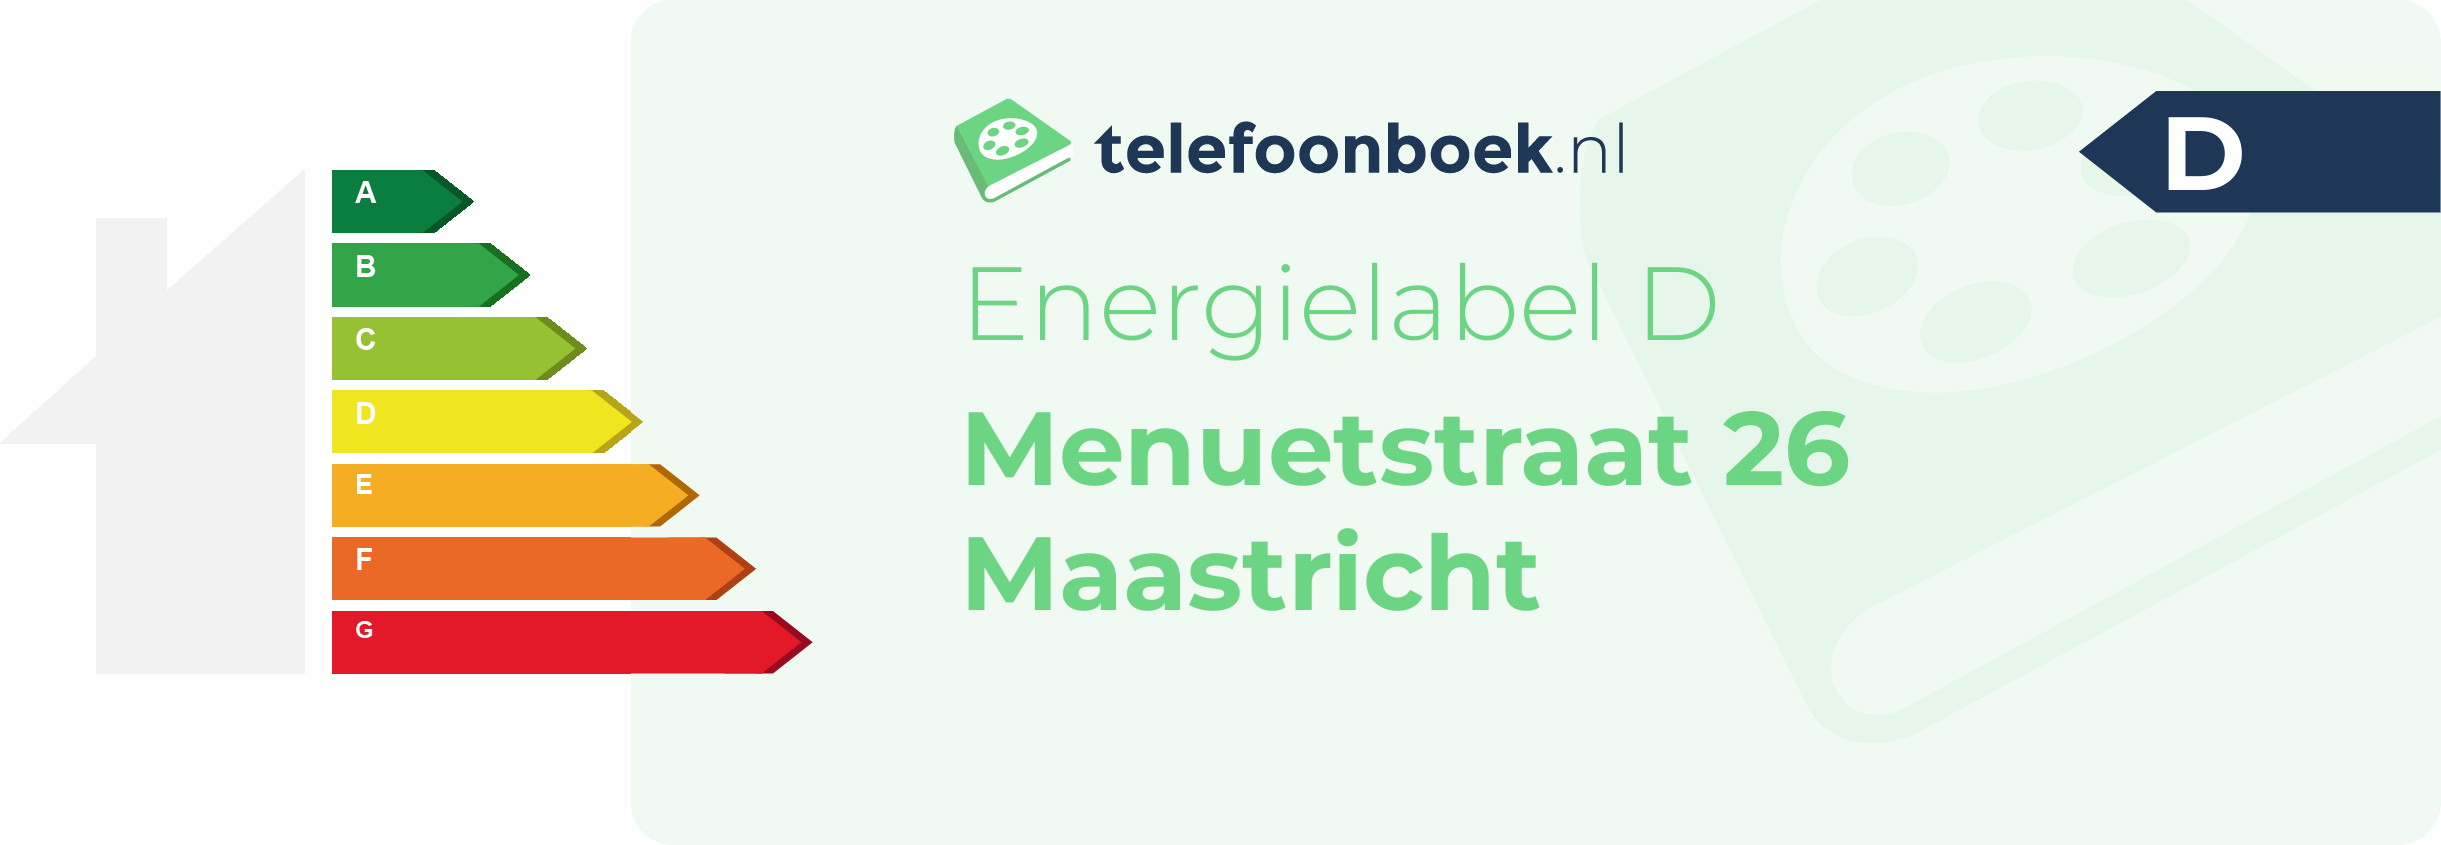 Energielabel Menuetstraat 26 Maastricht